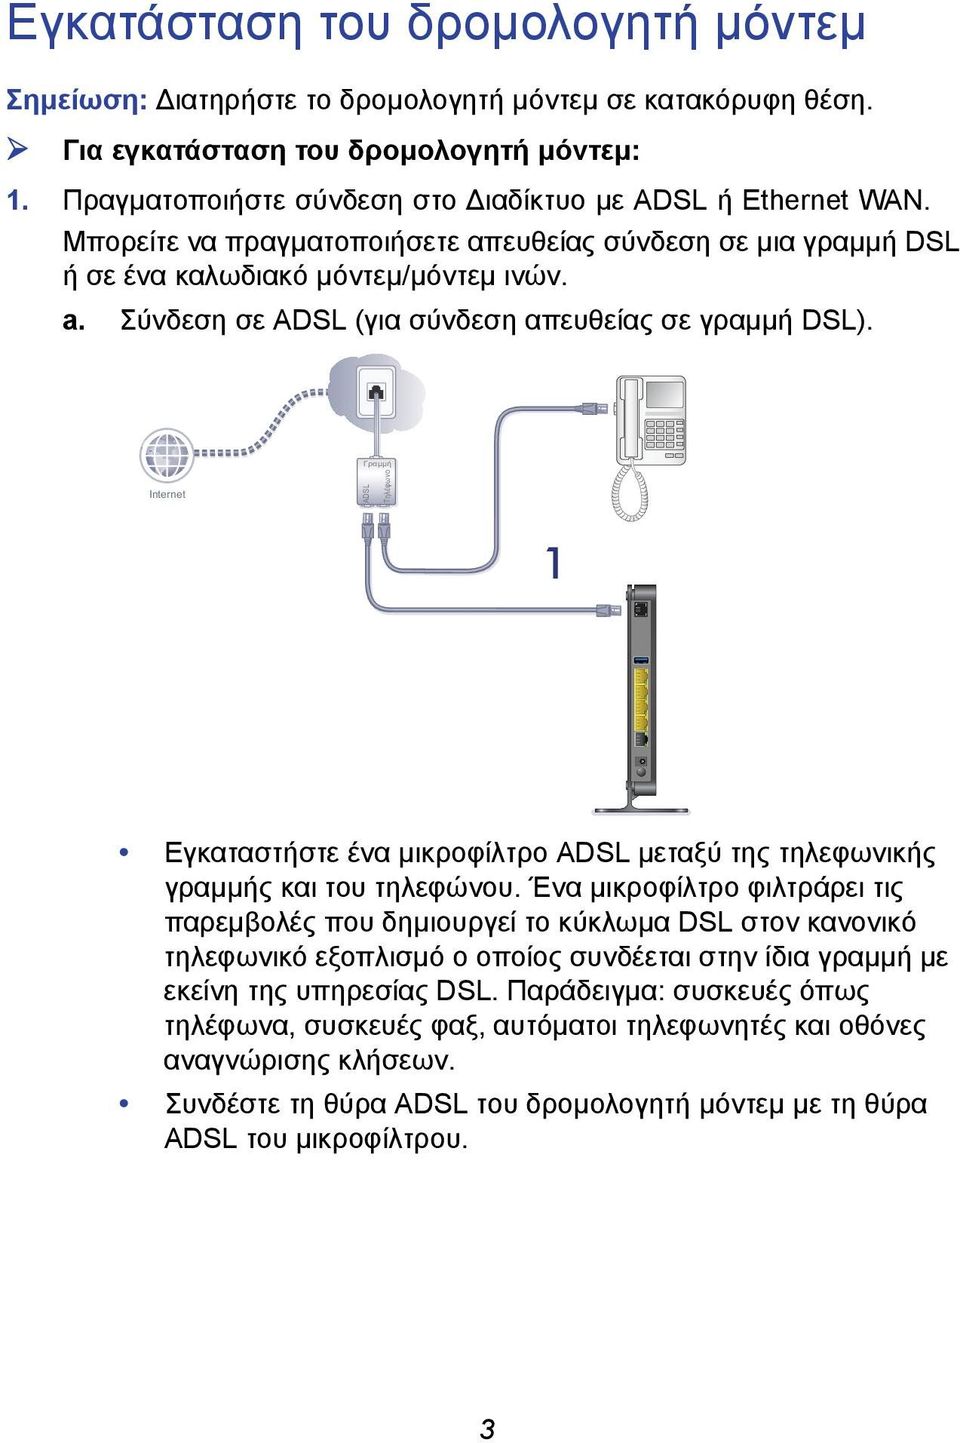 Σύνδεση σε ADSL (για σύνδεση απευθείας σε γραμμή DSL). Internet ADSL 1 Εγκαταστήστε ένα μικροφίλτρο ADSL μεταξύ της τηλεφωνικής γραμμής και του τηλεφώνου.